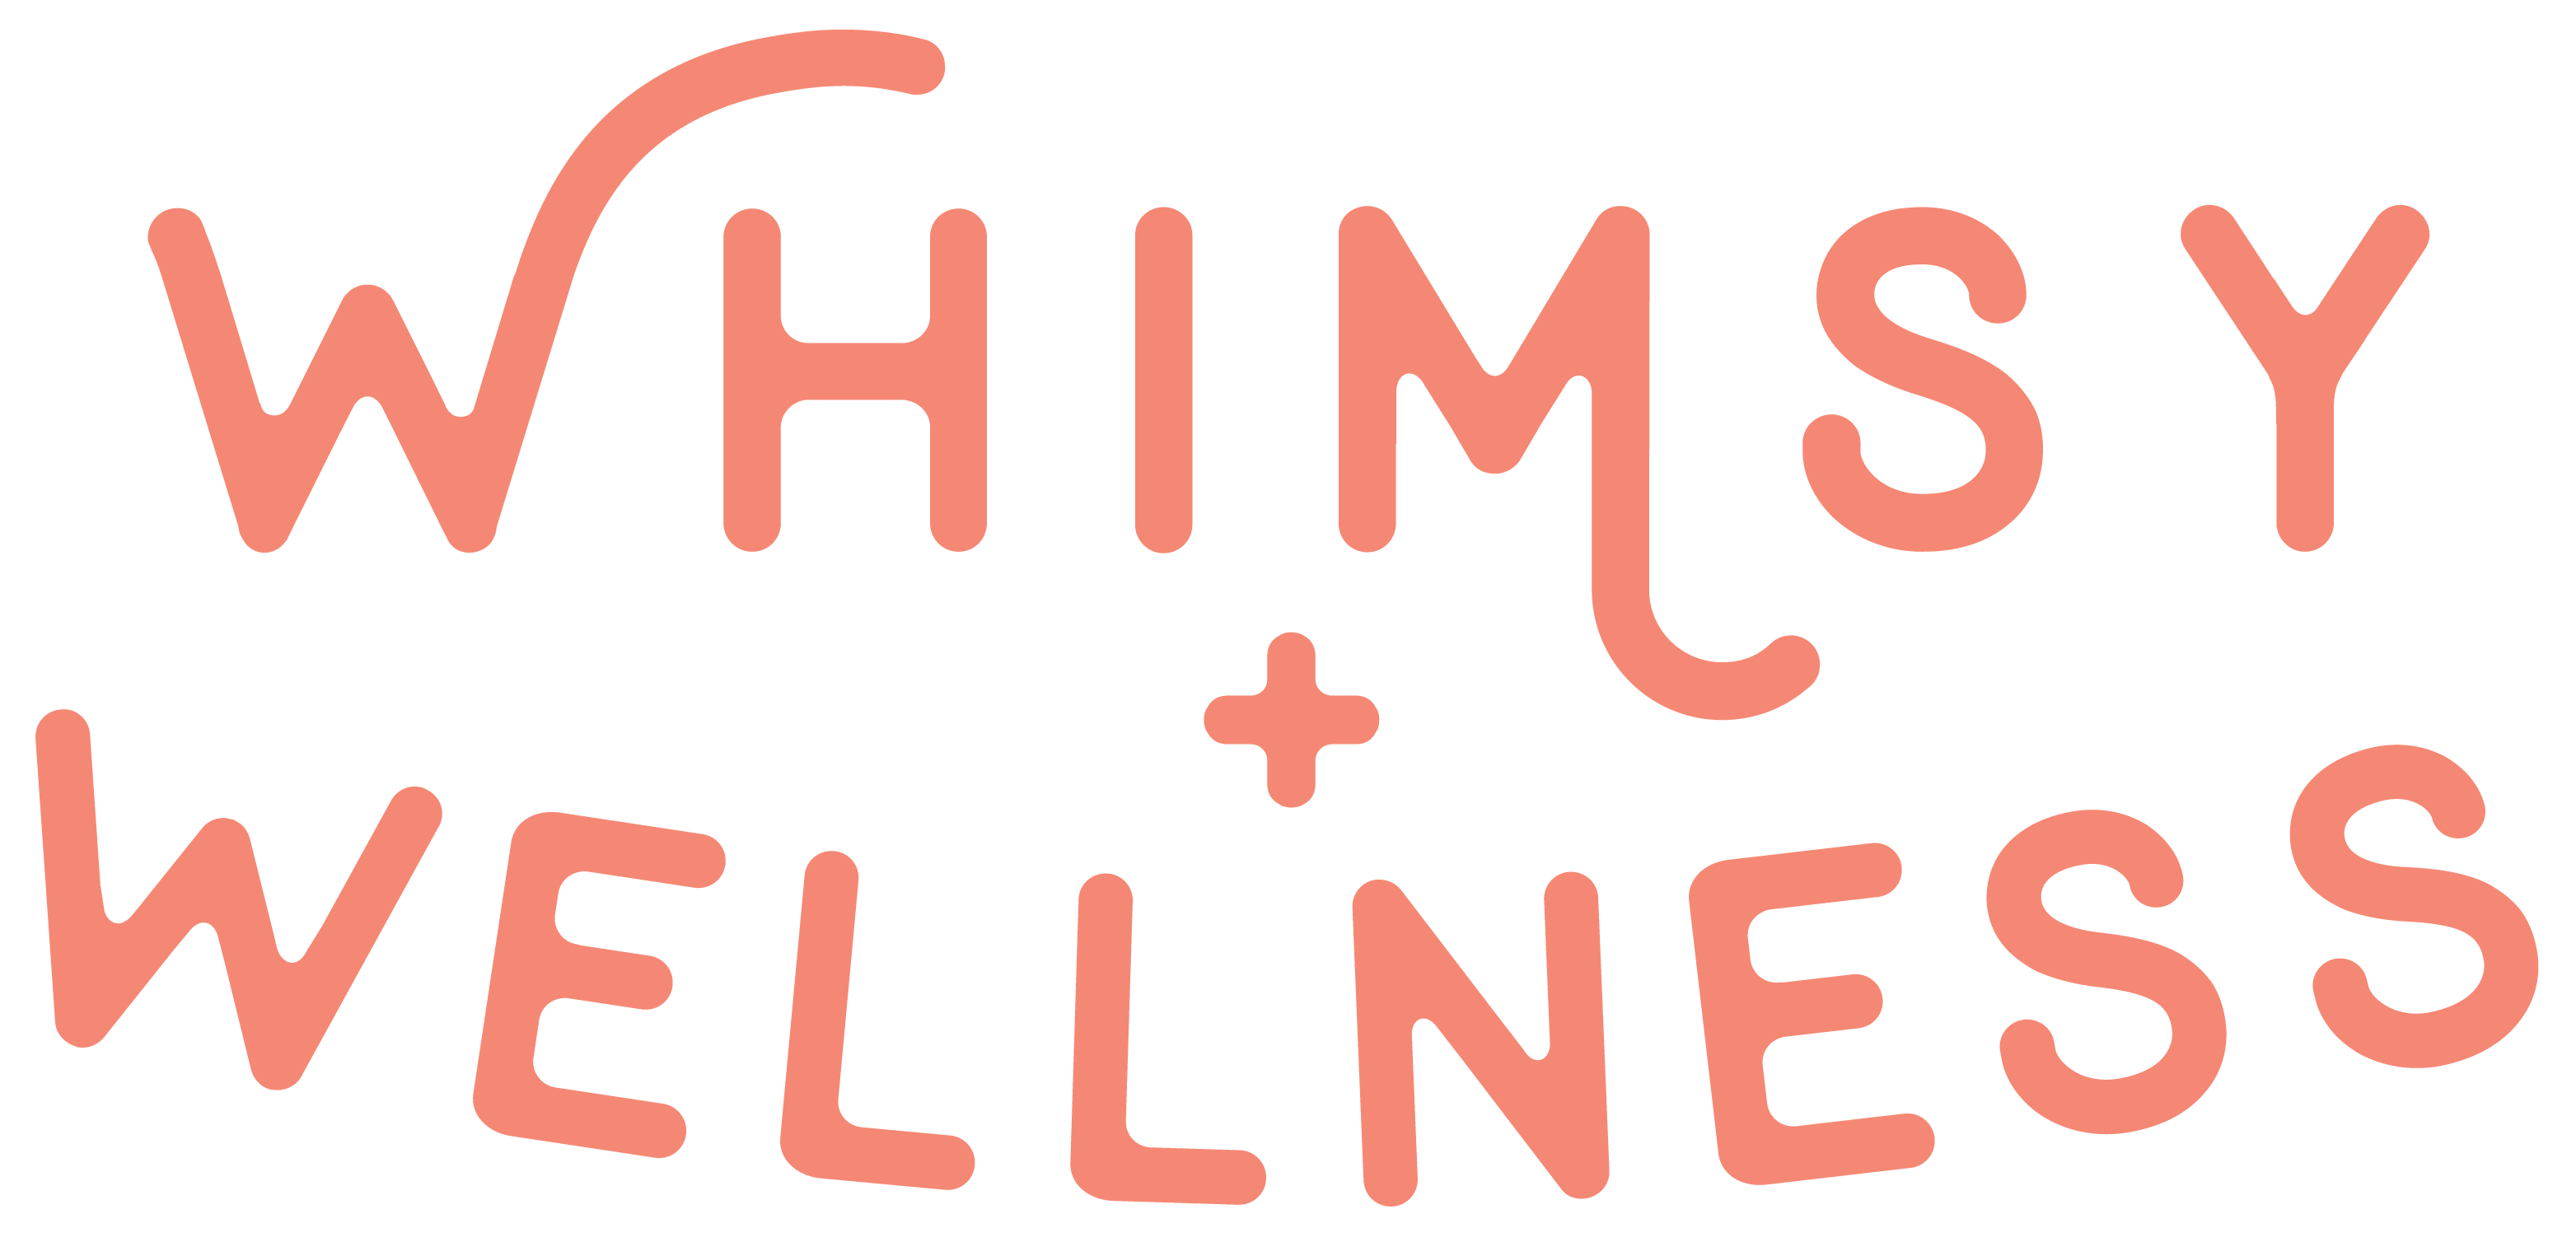 Partner Logo Section 5 Whimsey Wellness